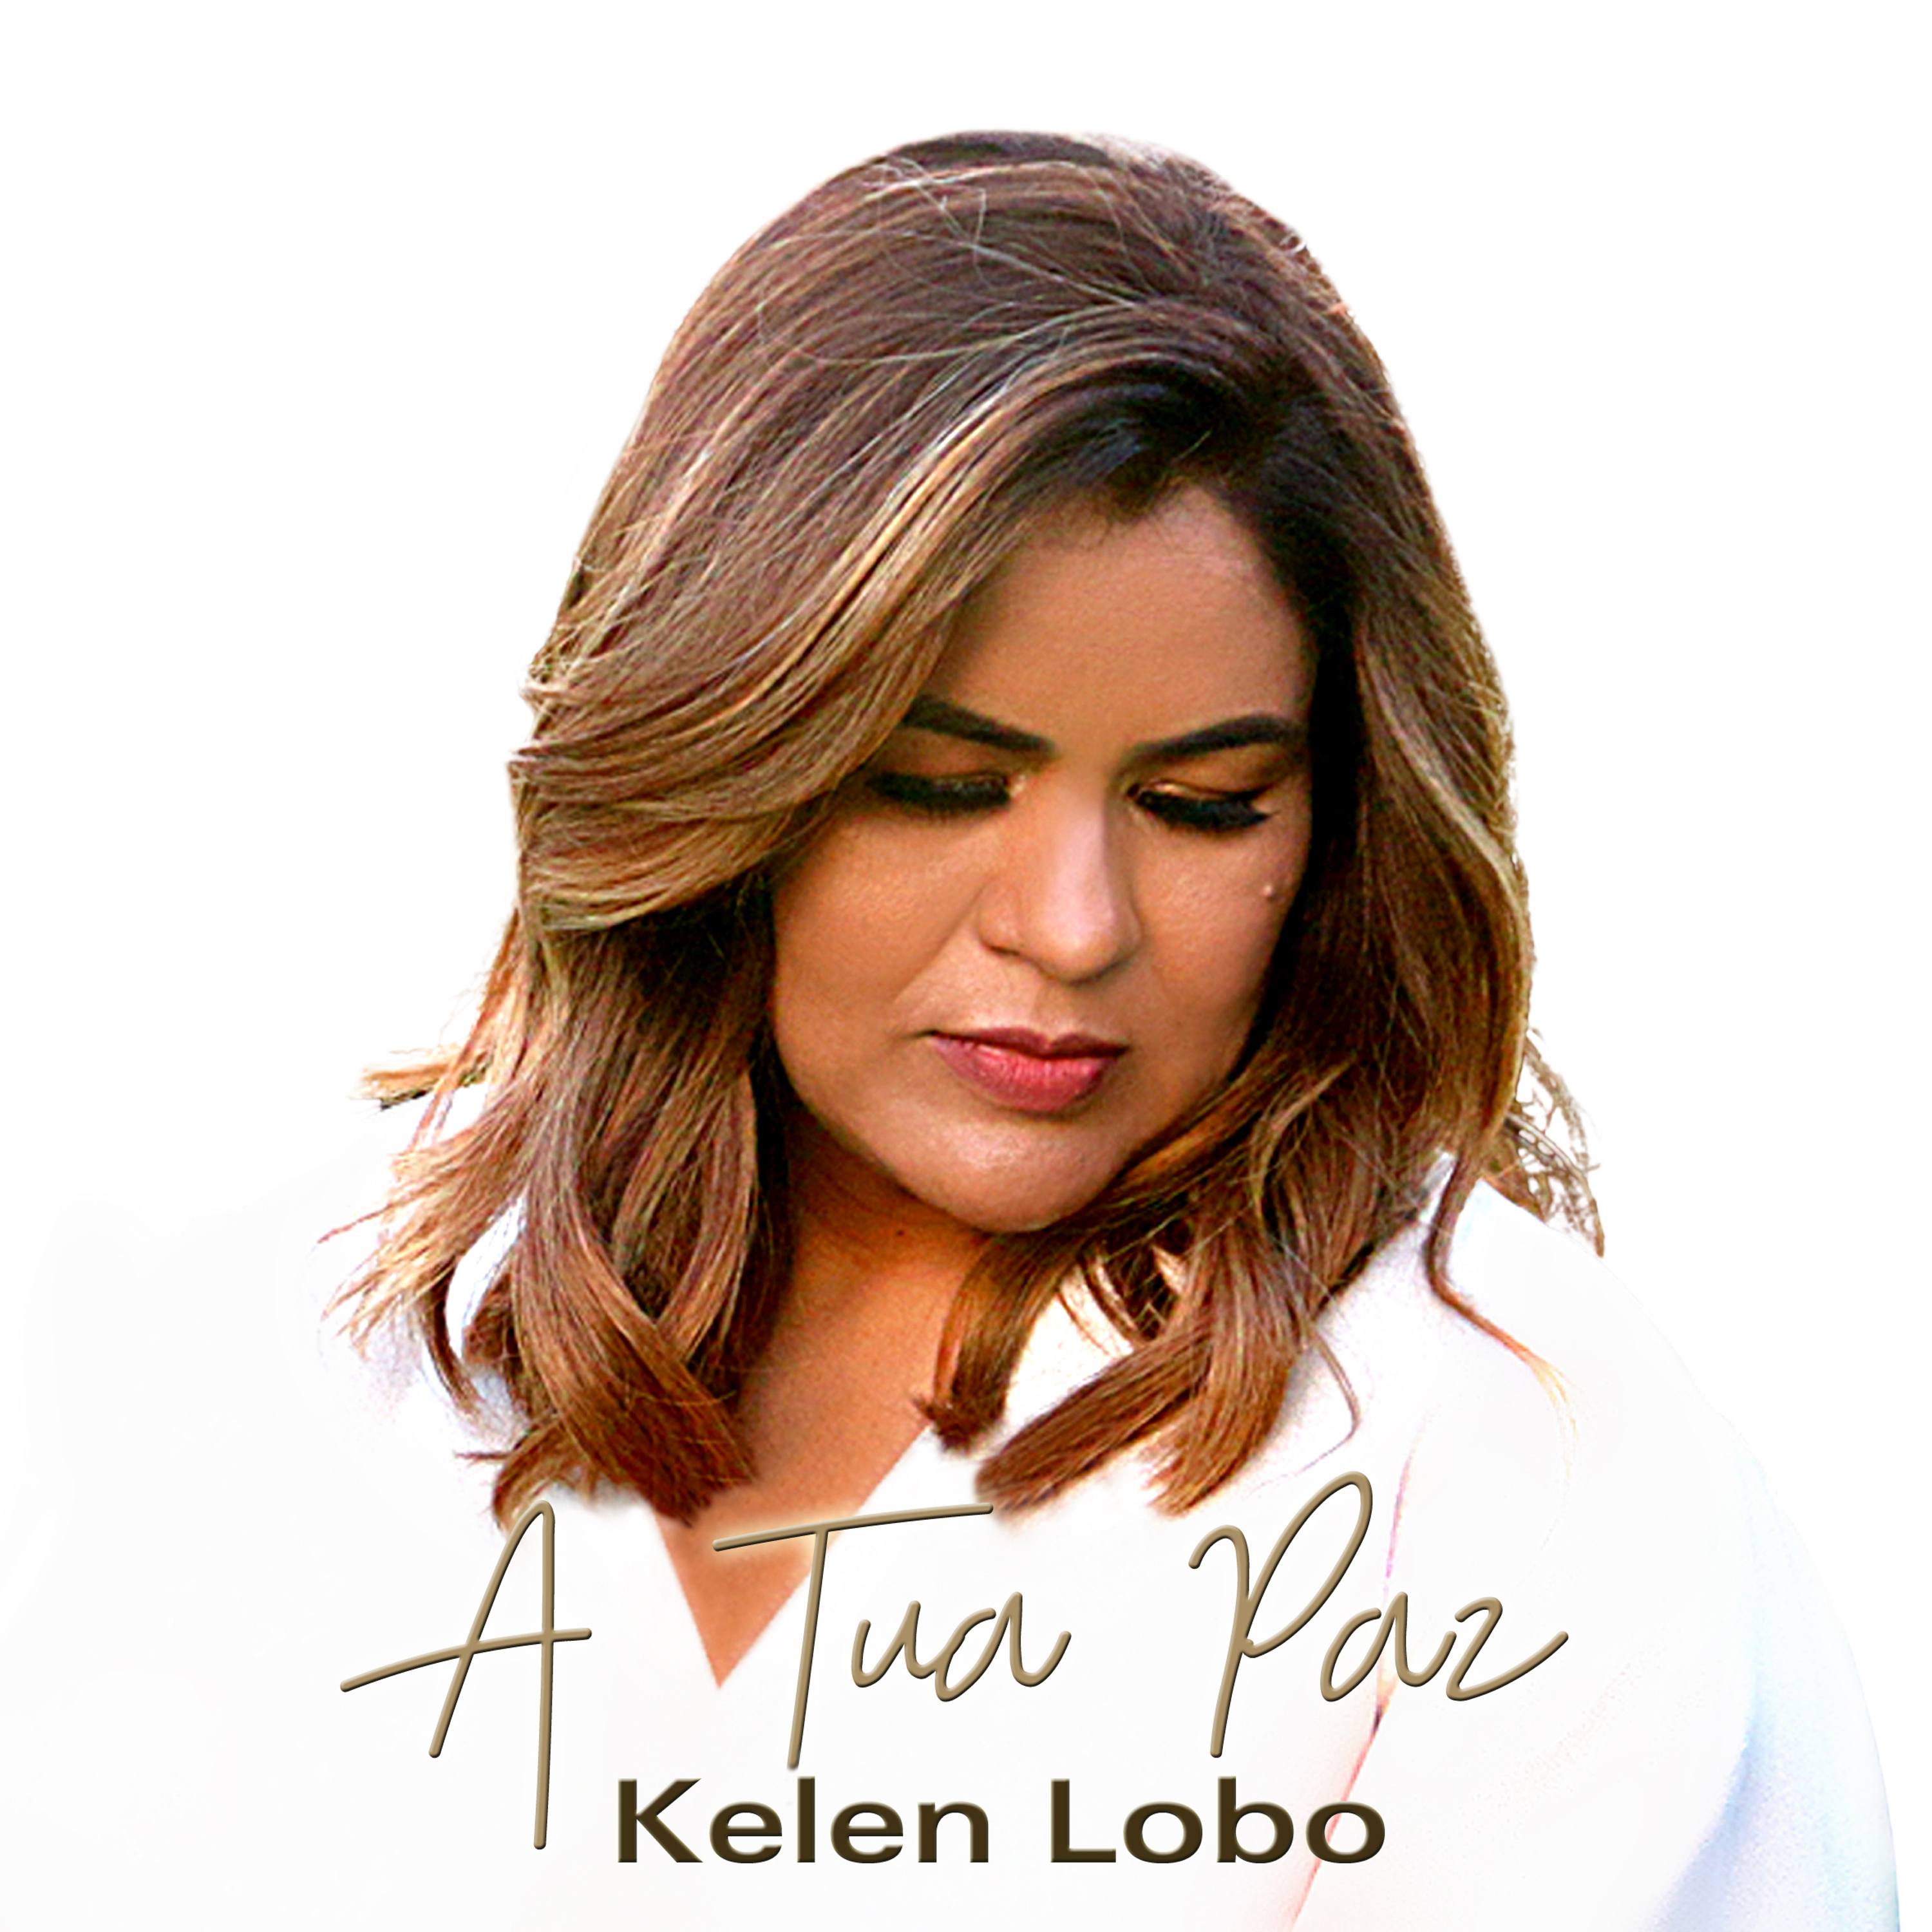 Kelen Lobo canta “A Tua Paz” em uma bela e oportuna mensagem musical